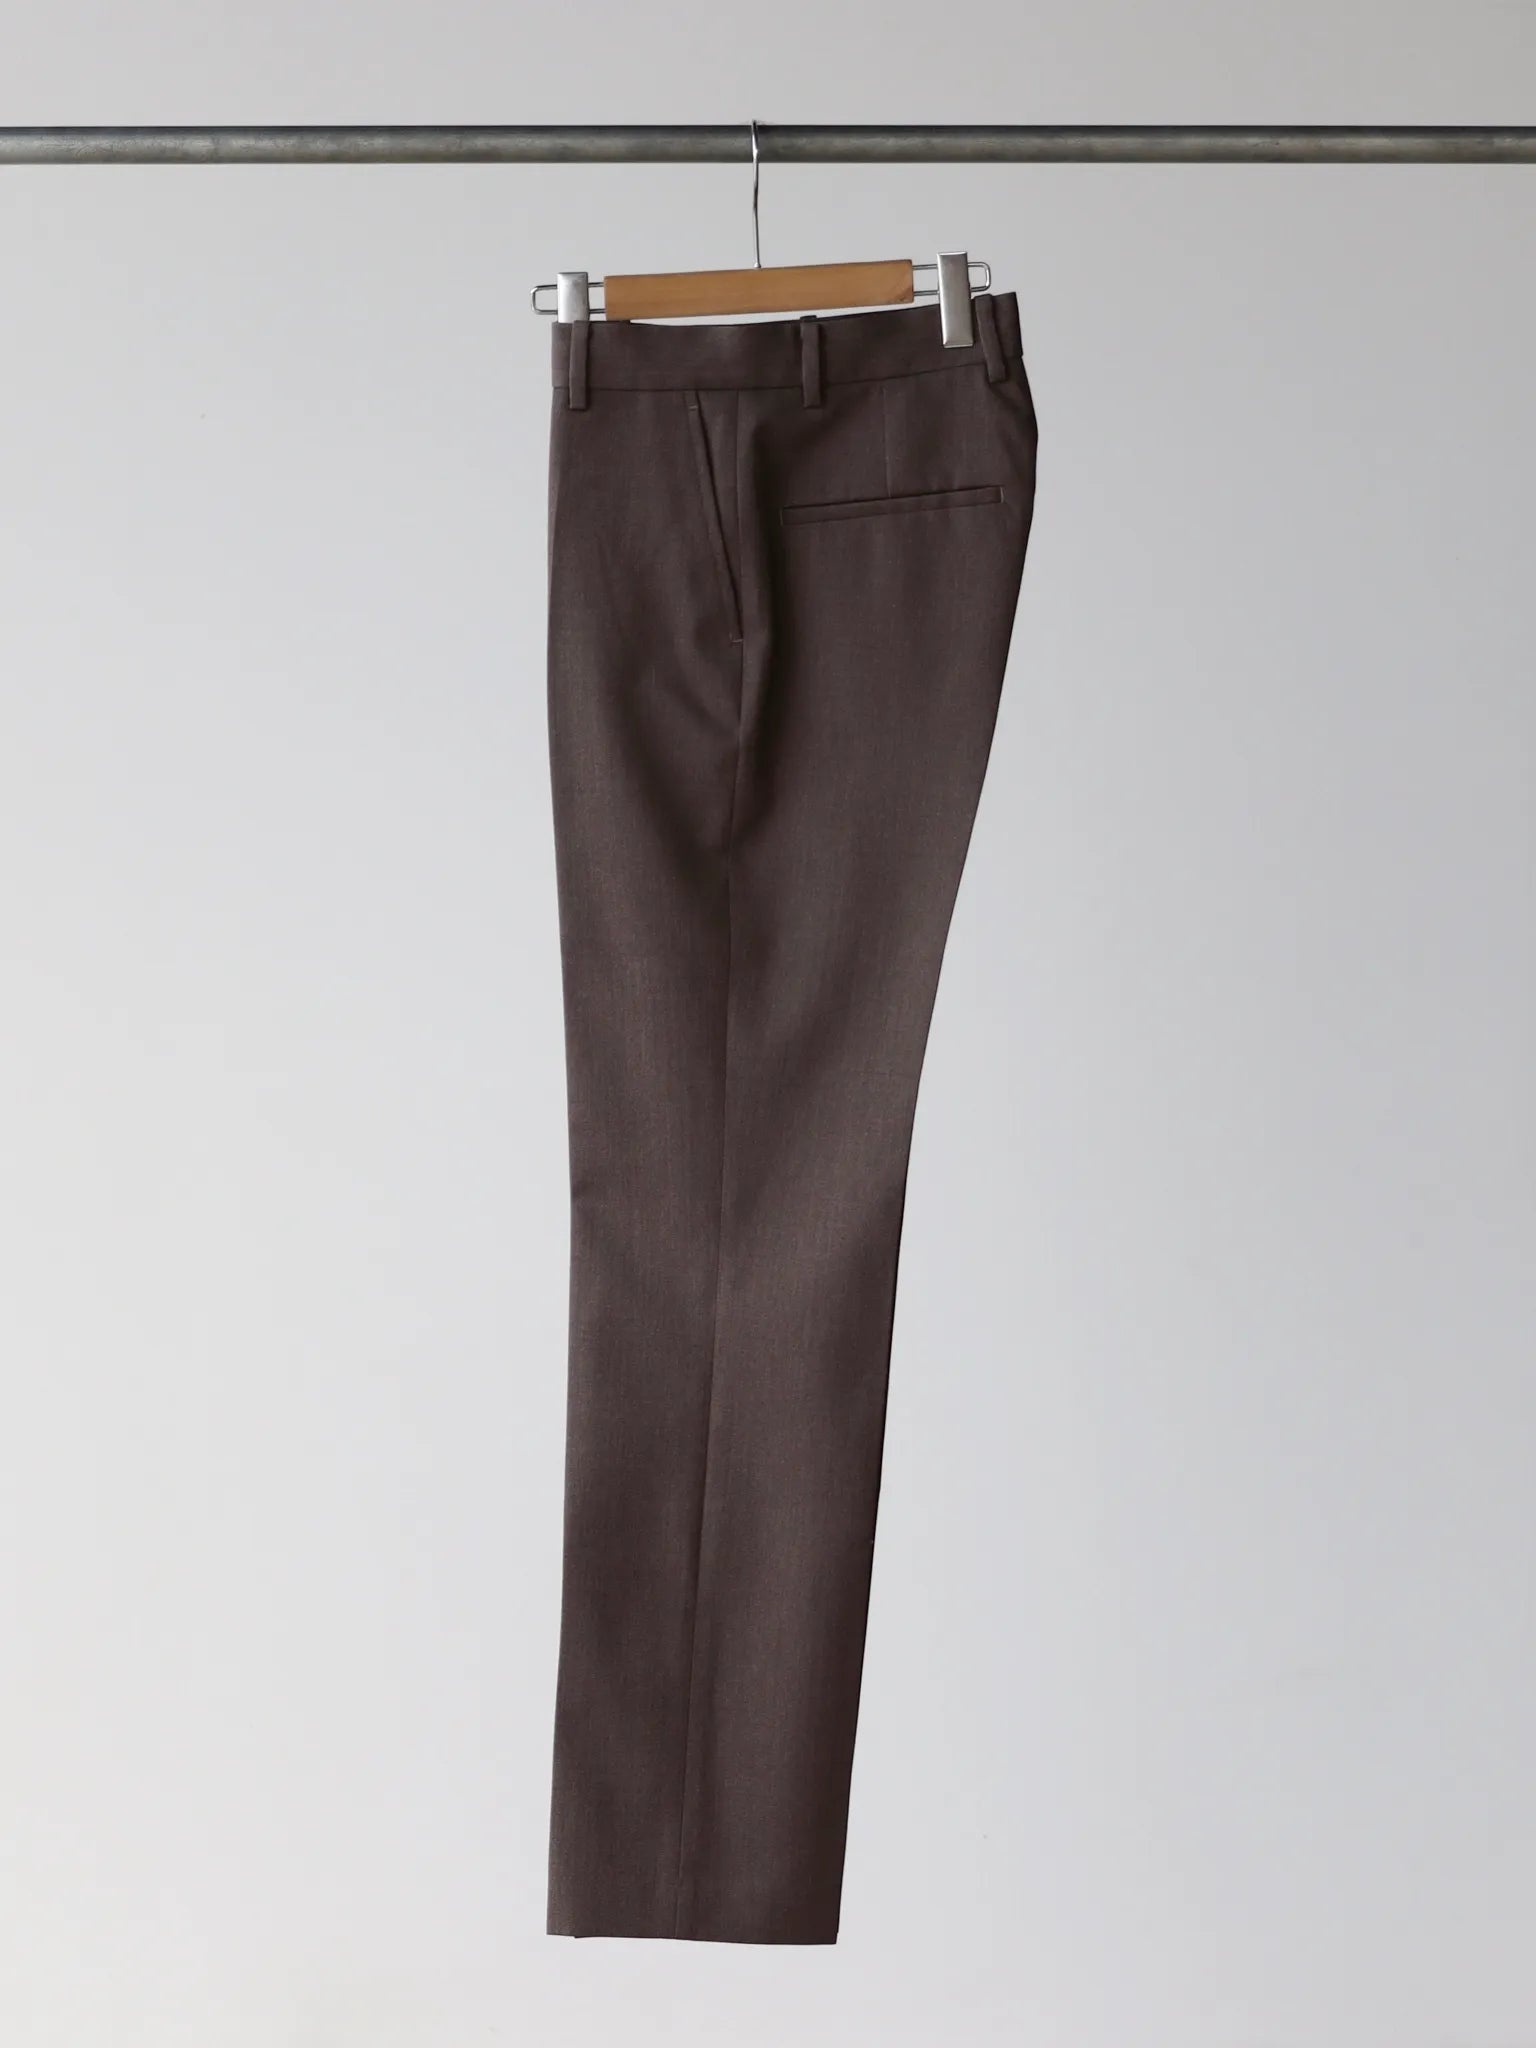 sean-suen-trousers-brown-3